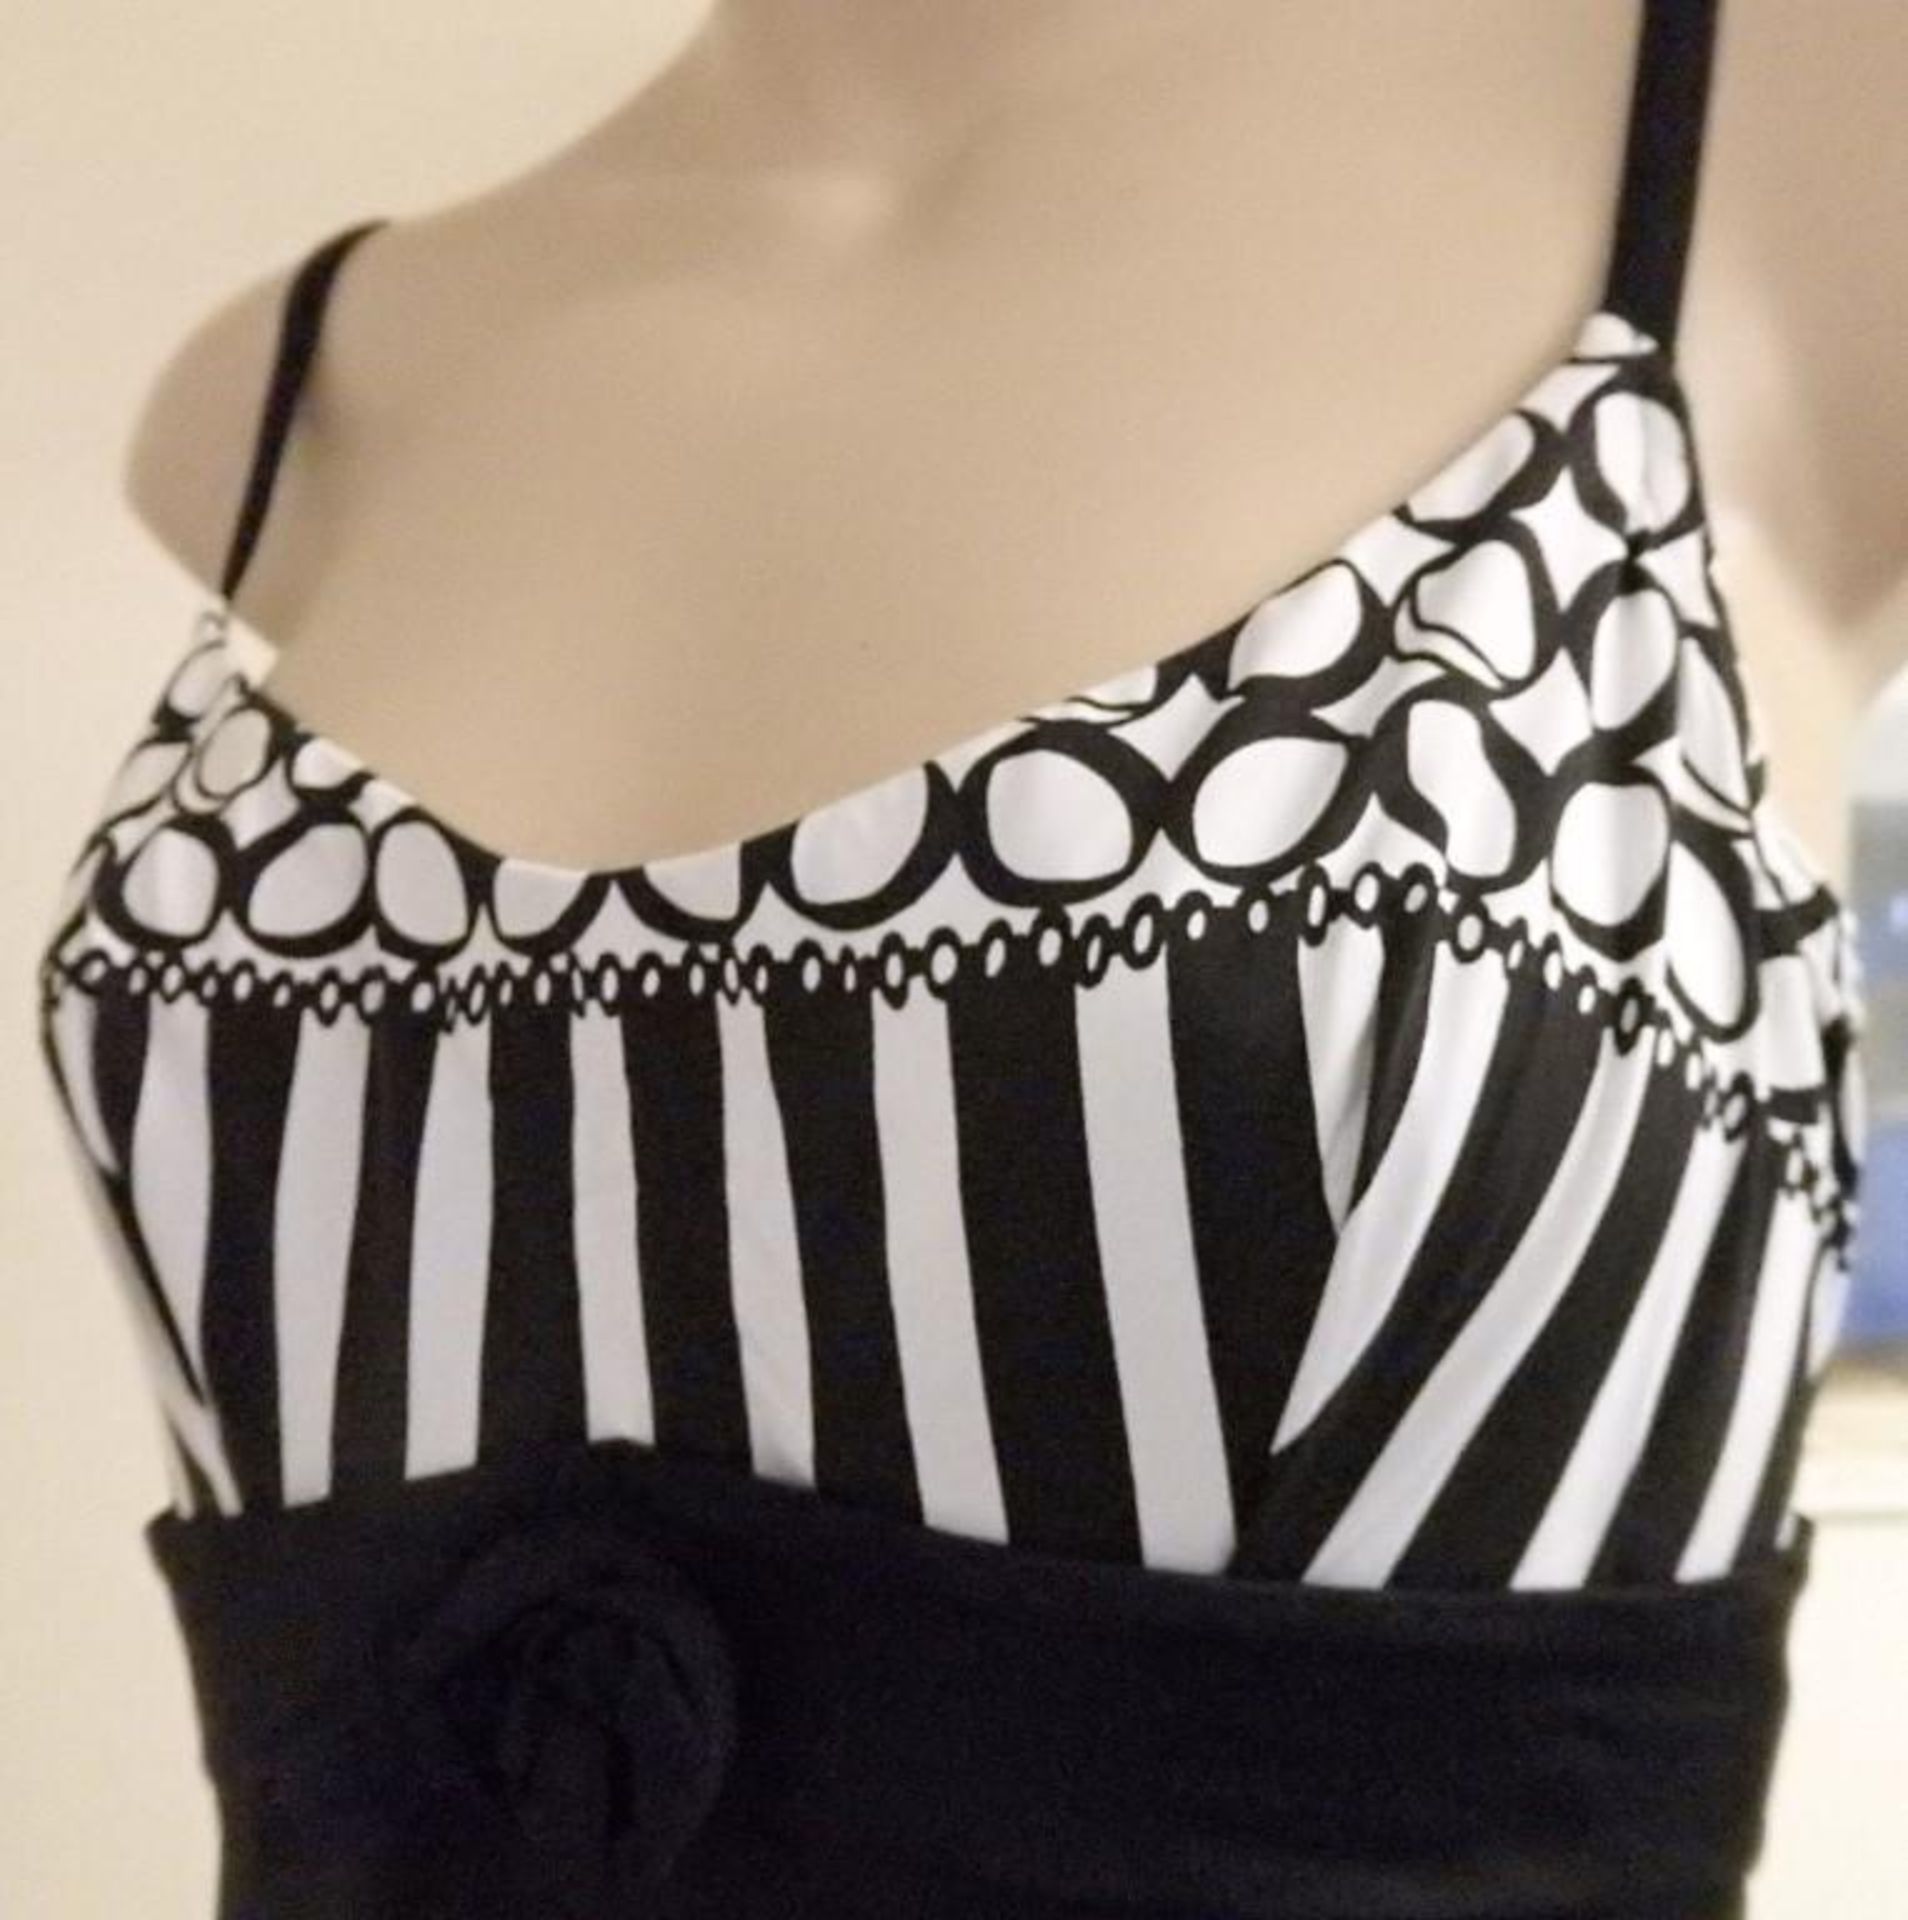 1 x Rasurel - Black/White patterned - Borneo Swimsuit - R20435 - Size 2C - UK 32 - Fr 85 - EU/Int 7 - Image 4 of 5